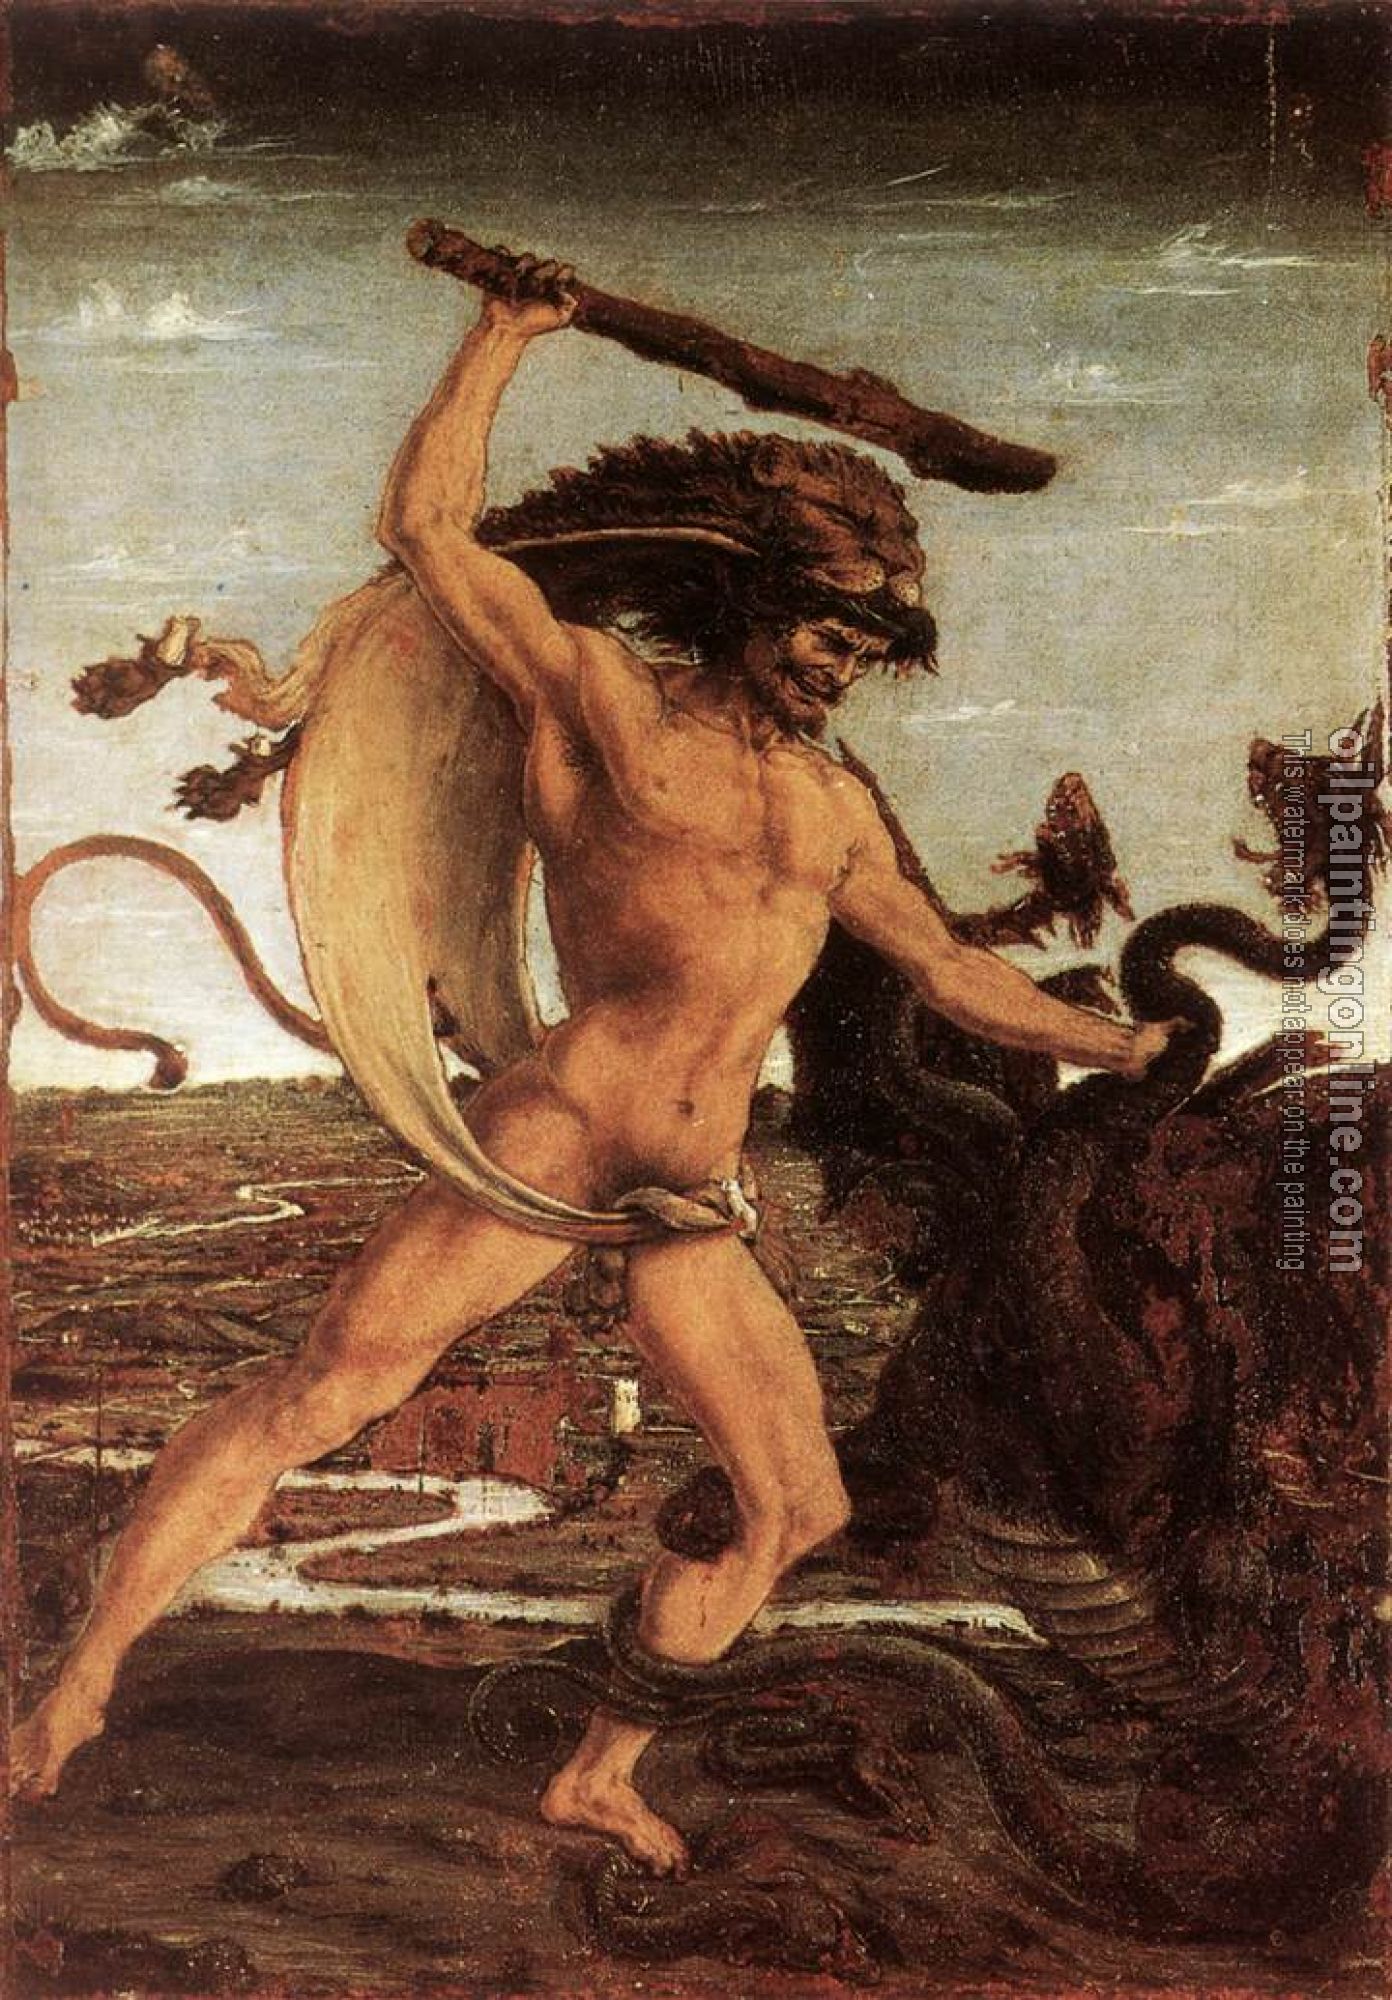 Pollaiolo, Antonio del - Hercules and the Hydra